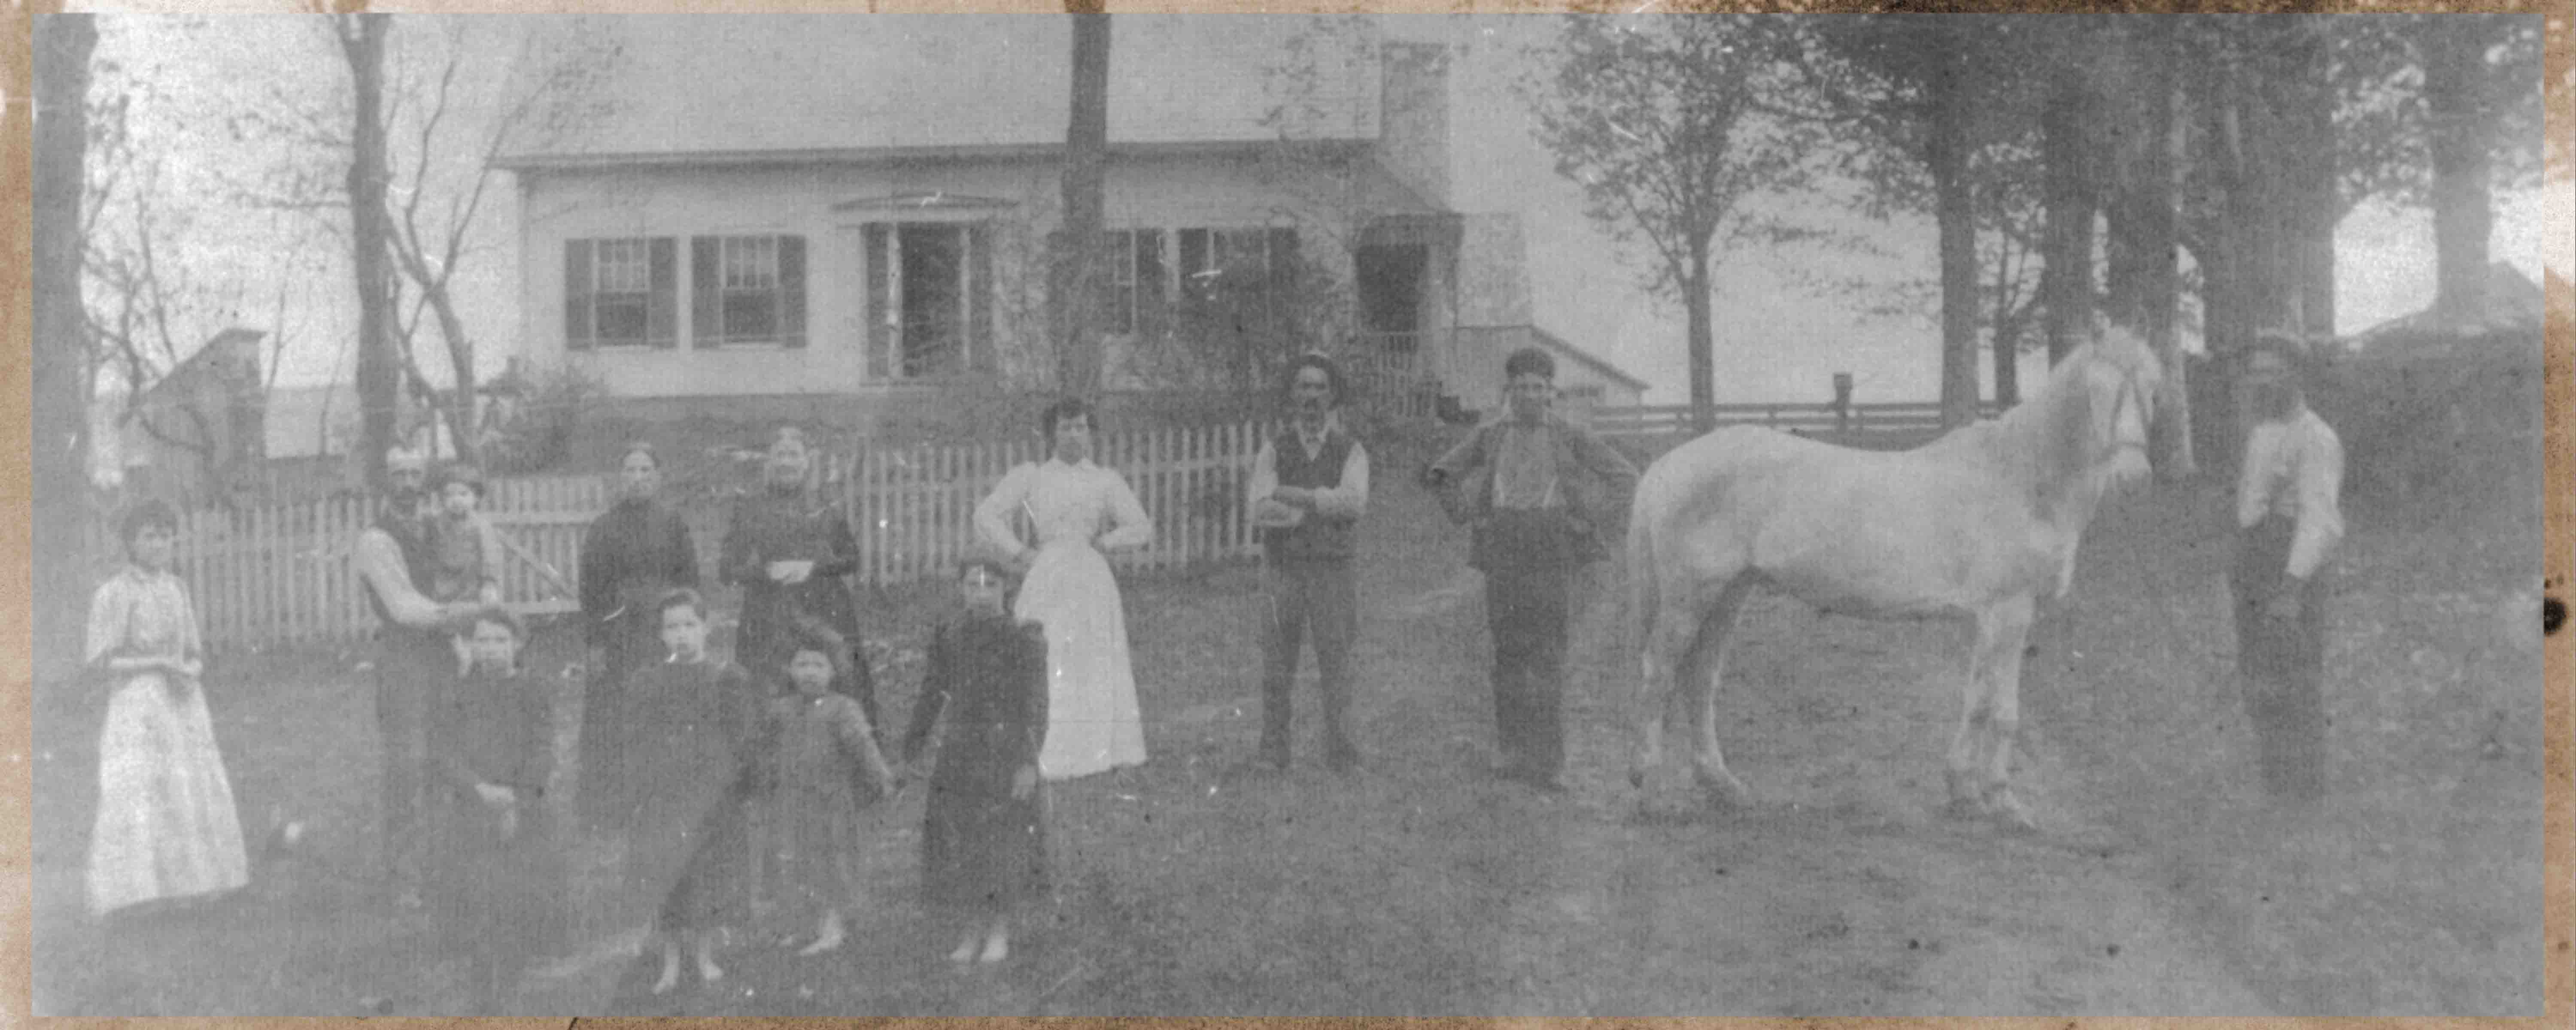 Family in 1882